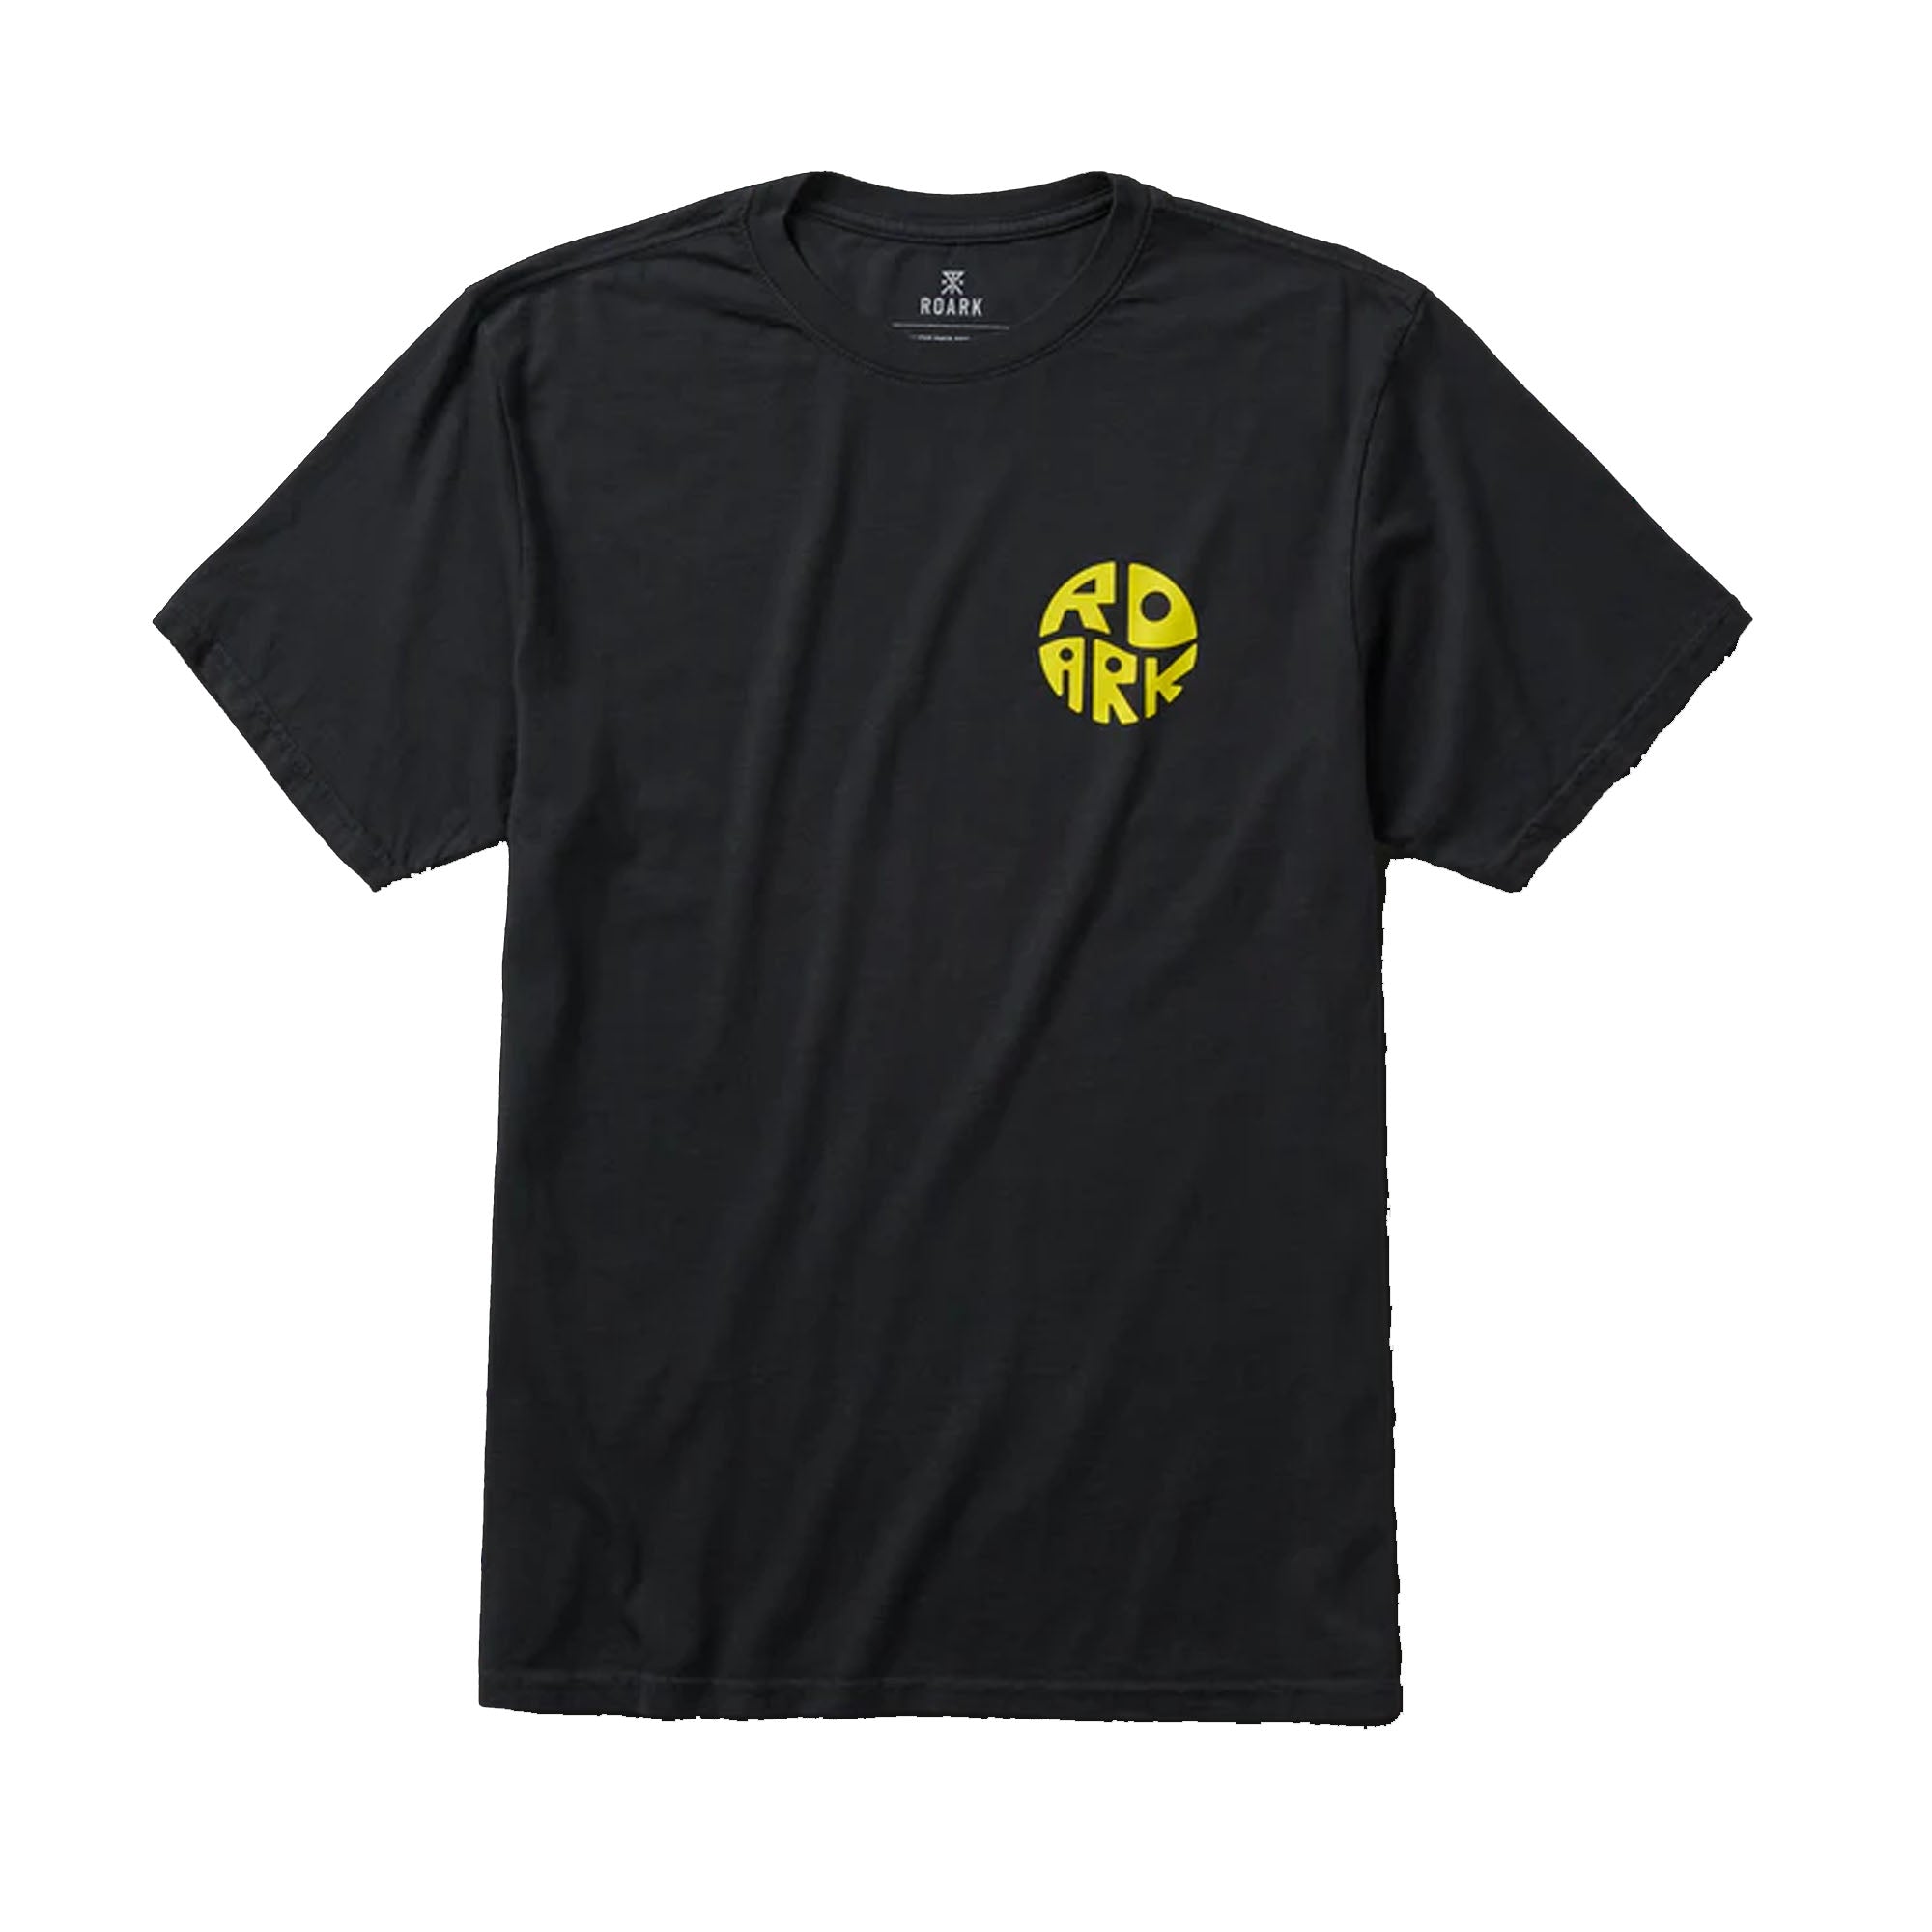 Roark Road Trip Club Premium Men's S/S T-Shirt